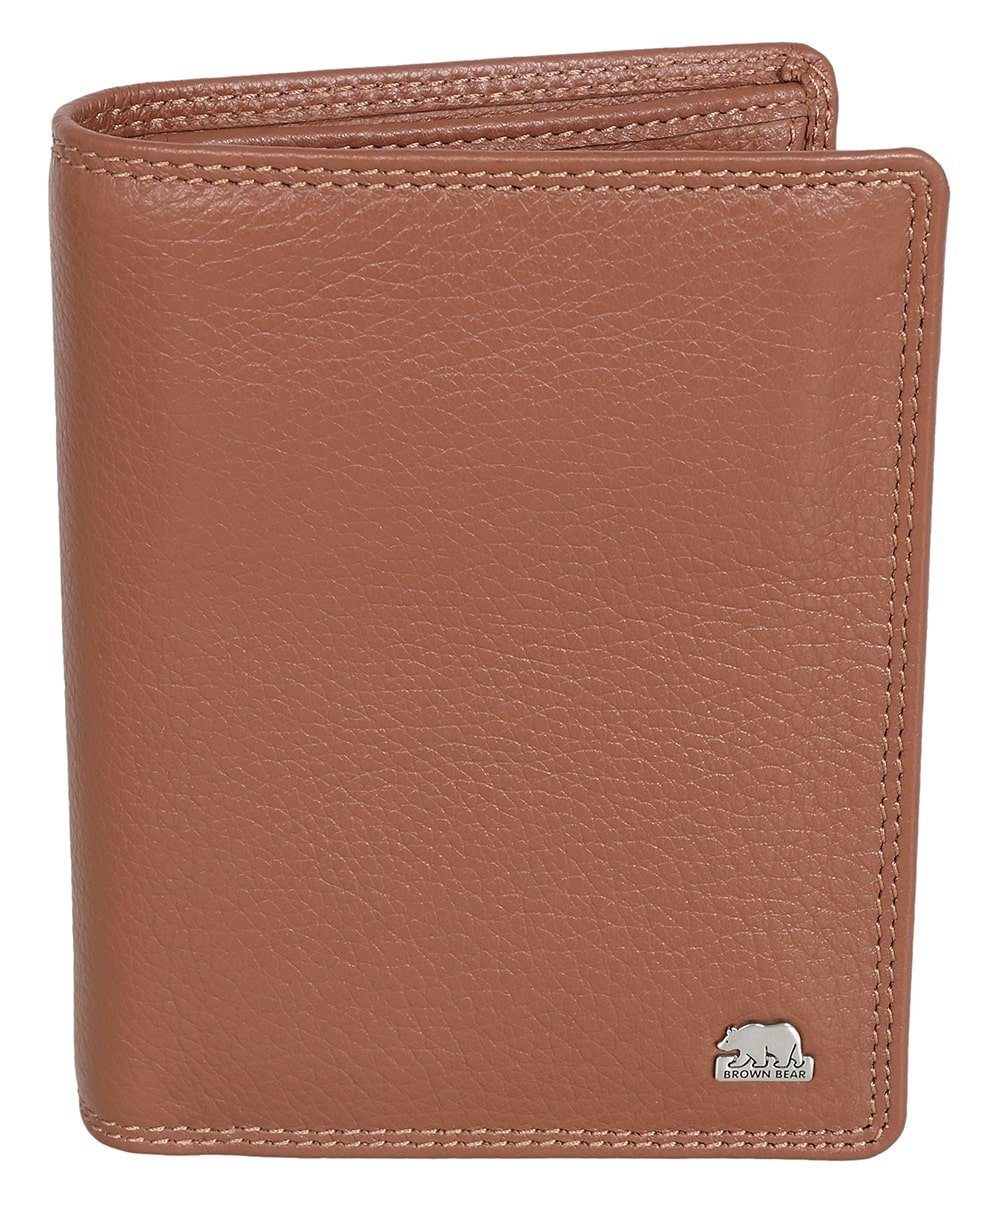 Brown Bear Geldbörse Classic 8005 D LF - Farbe: Braun-Camel, Brieftasche Lederbörse mit Münzfach RFID Schutz Braun Cognac